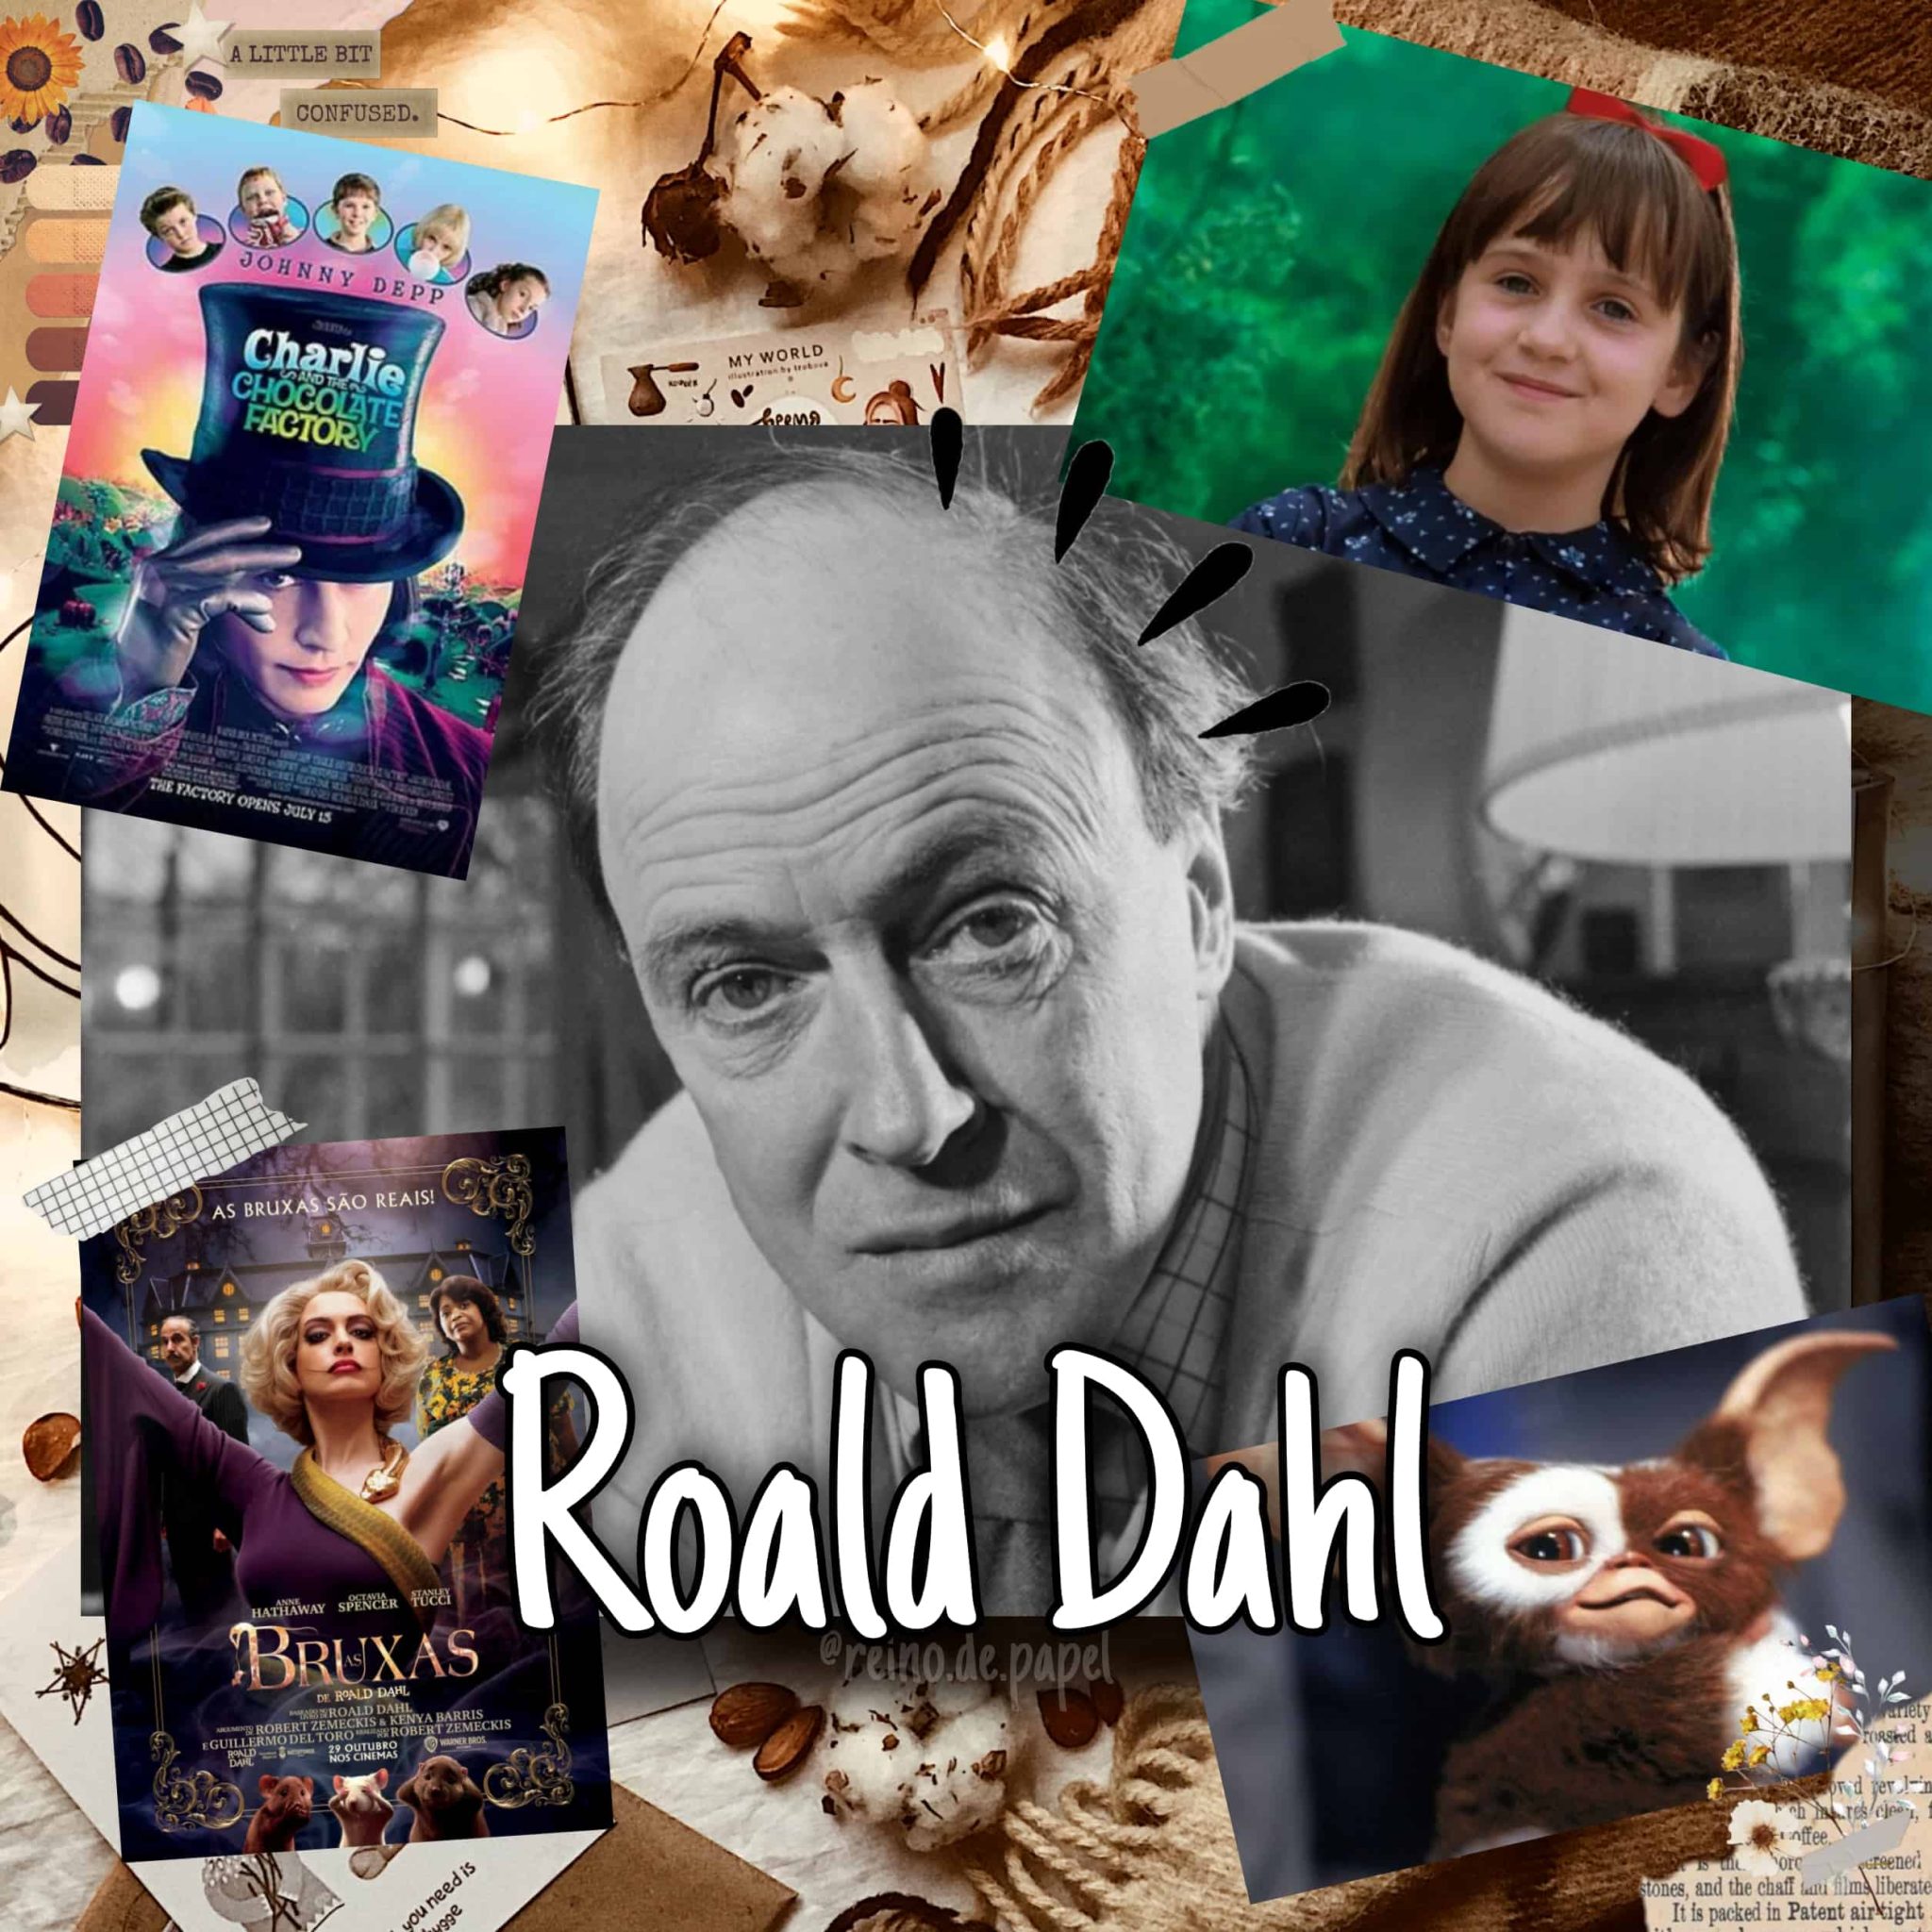 ao centro foto do autor Roald Dahl. Ao redor dele alguns personagens: Matilda, Gremlim e capa dos filmes A fantástica fábrica de chocolate e As Bruxas